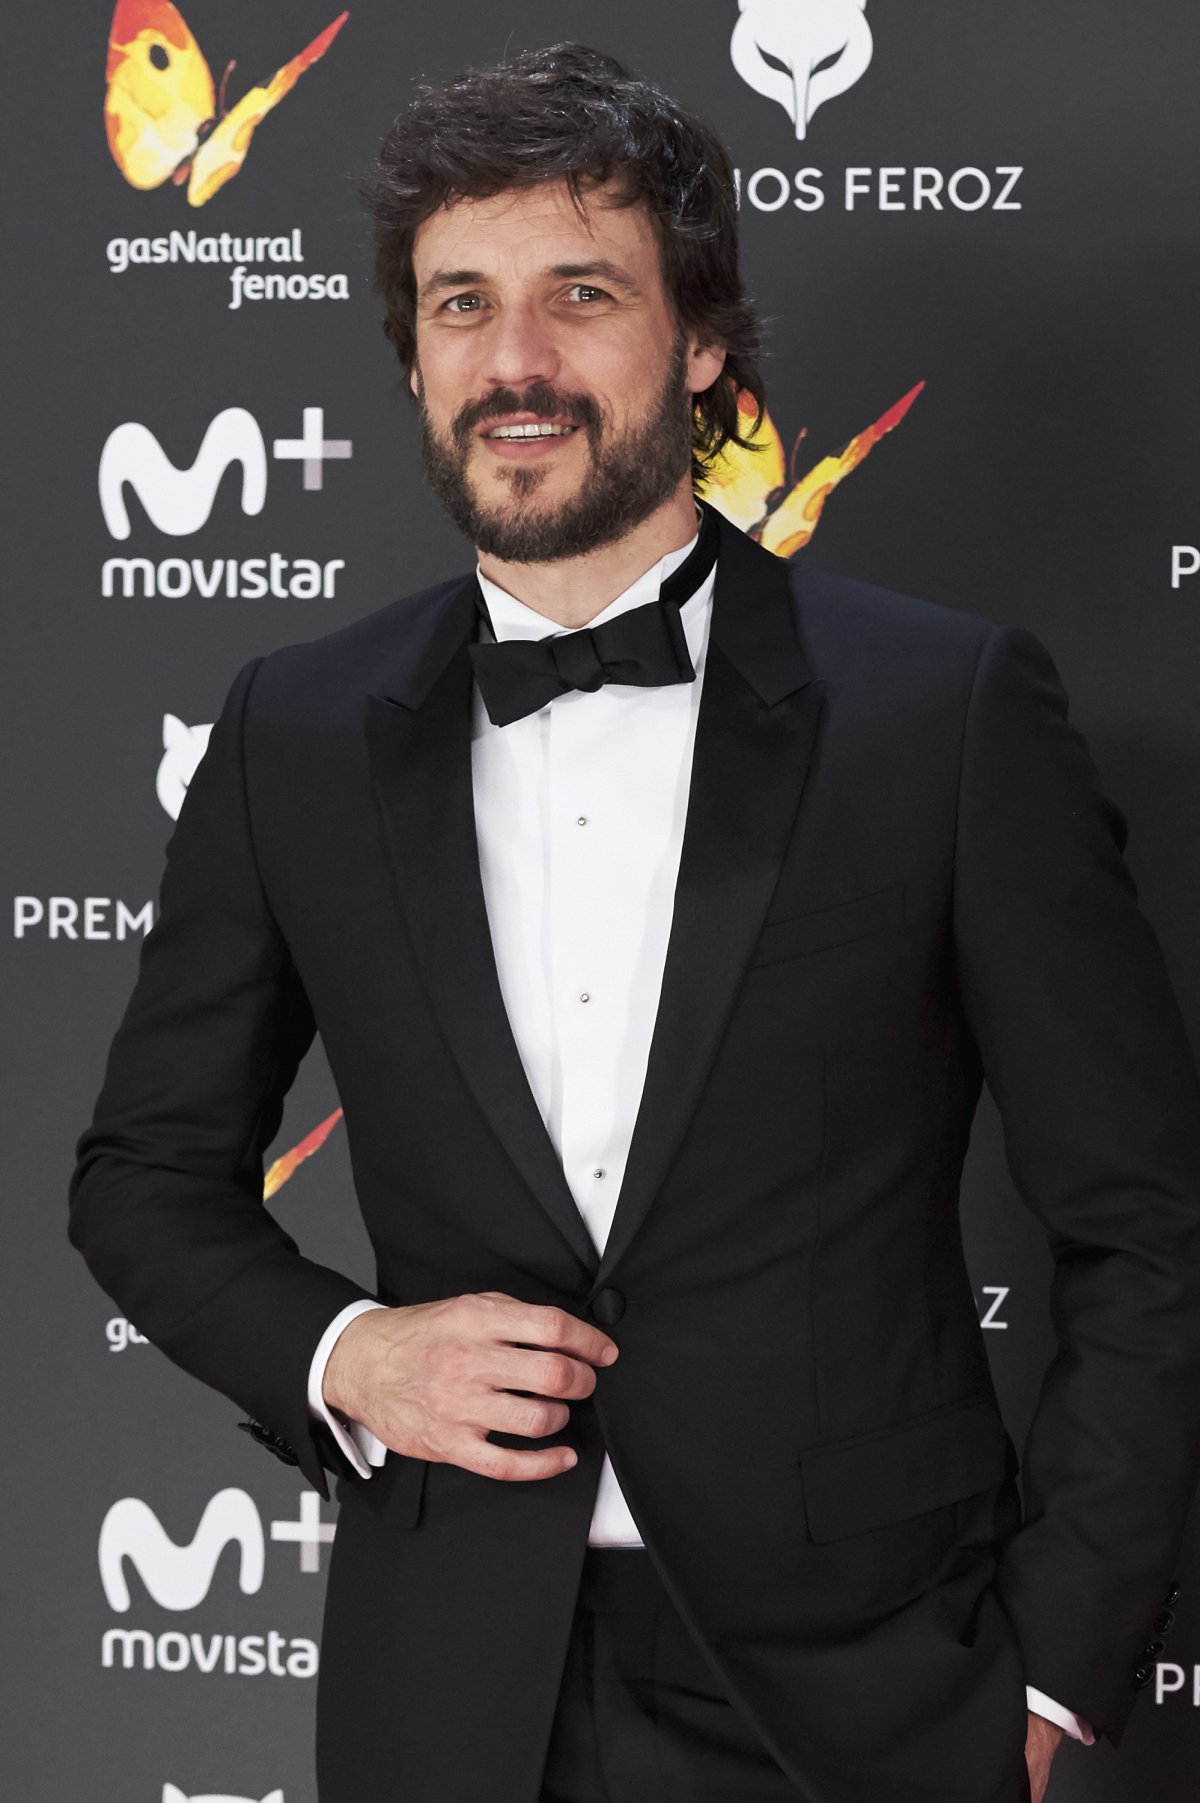 Nadie se quiso perder la alfombra roja de los premios más gamberros del cine español